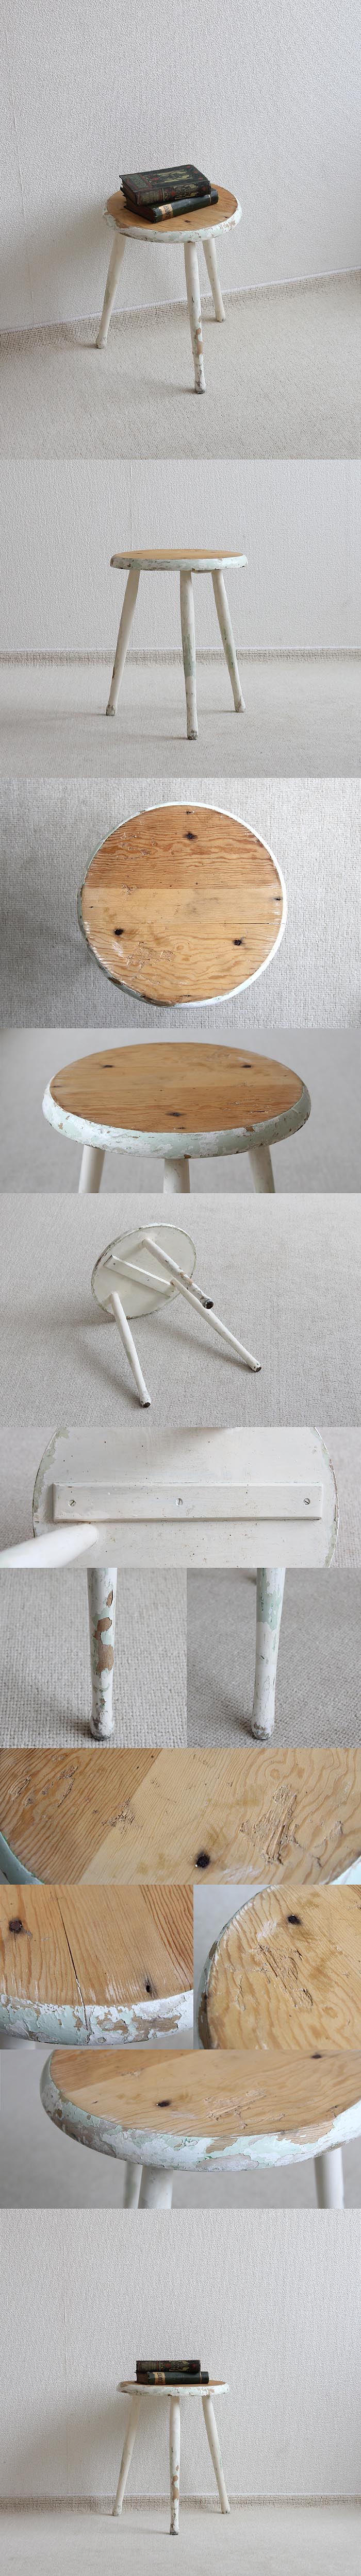 イギリス アンティーク ペイントスツール 木製 丸椅子 古木 英国 家具「シャビーシック」V-479